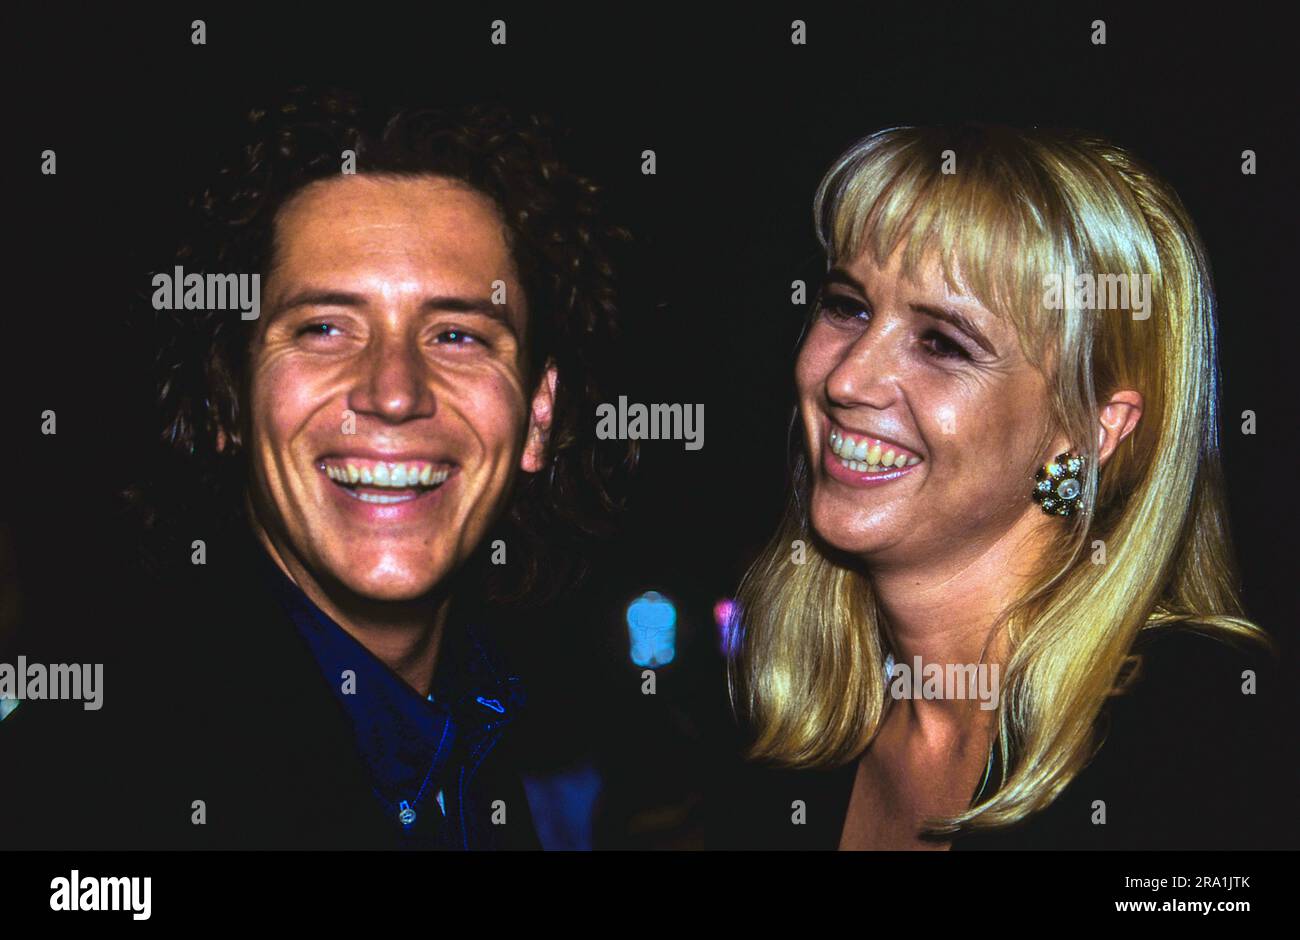 TV Regisseur Sander Vahle mit seiner Partnerin, der niederländischen Moderatorin Linda de Mol, Deutschland, circa 1994. Stock Photo